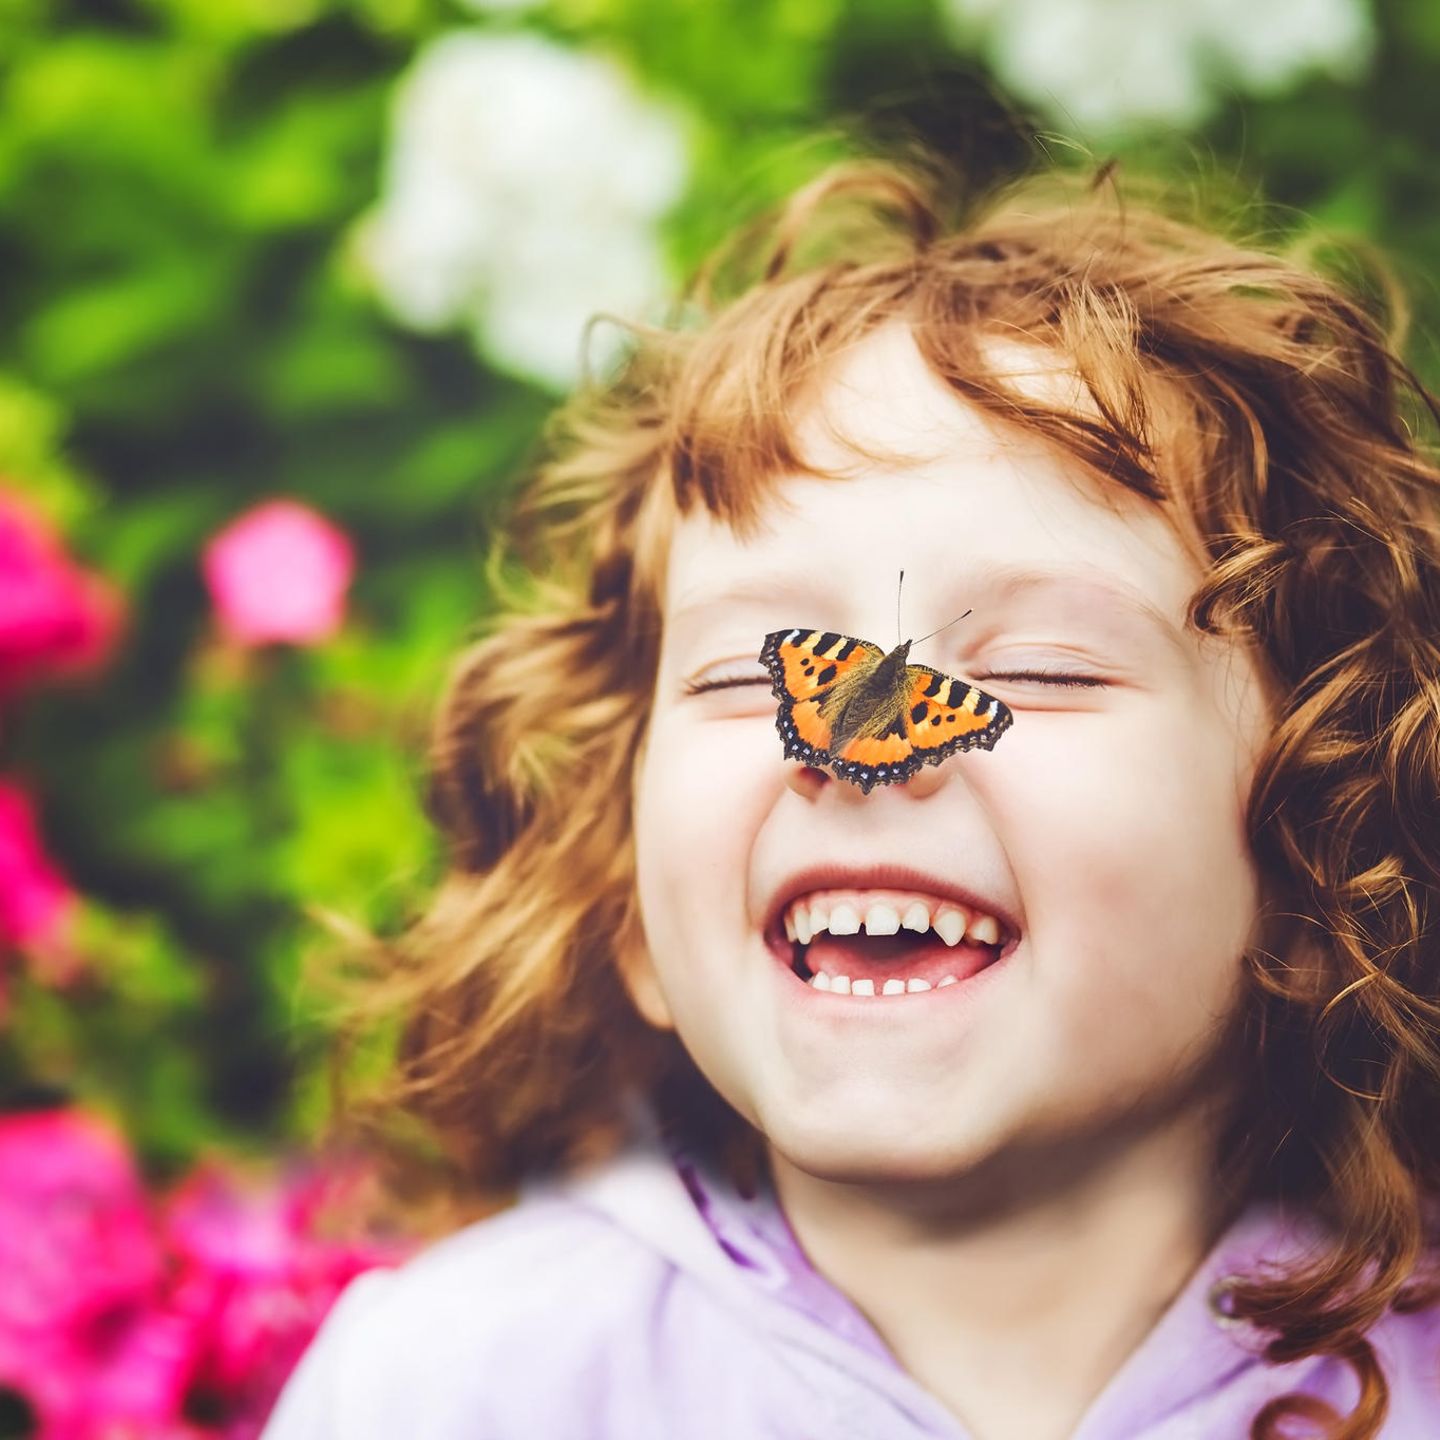 Ein lachendes kleines Mädchen mit einem Schmetterling auf der Nase